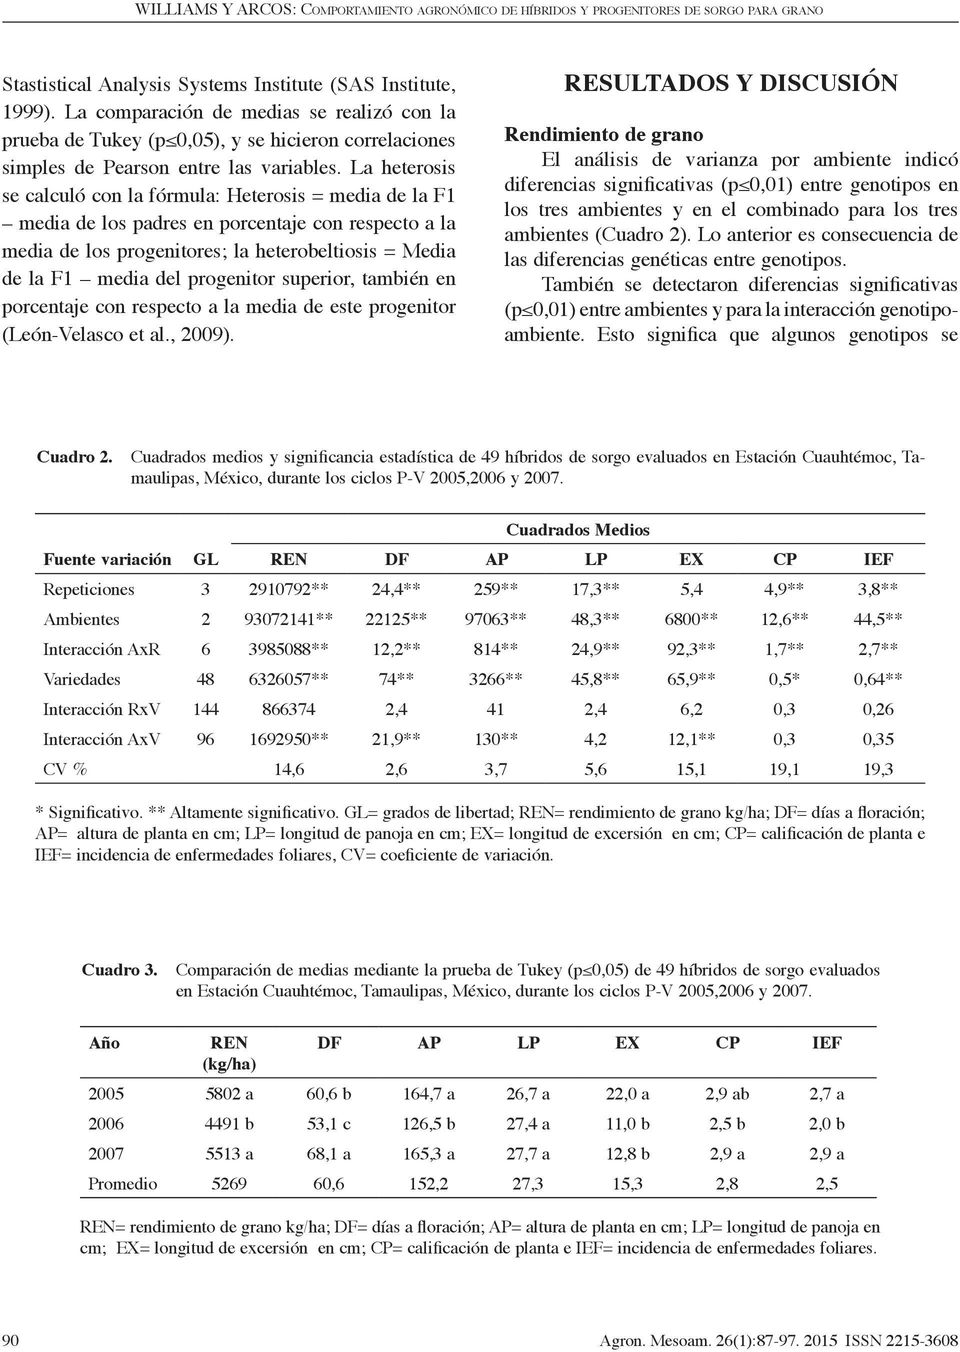 progenitor superior, también en porcentaje con respecto a la media de este progenitor (León-Velasco et al., 2009).